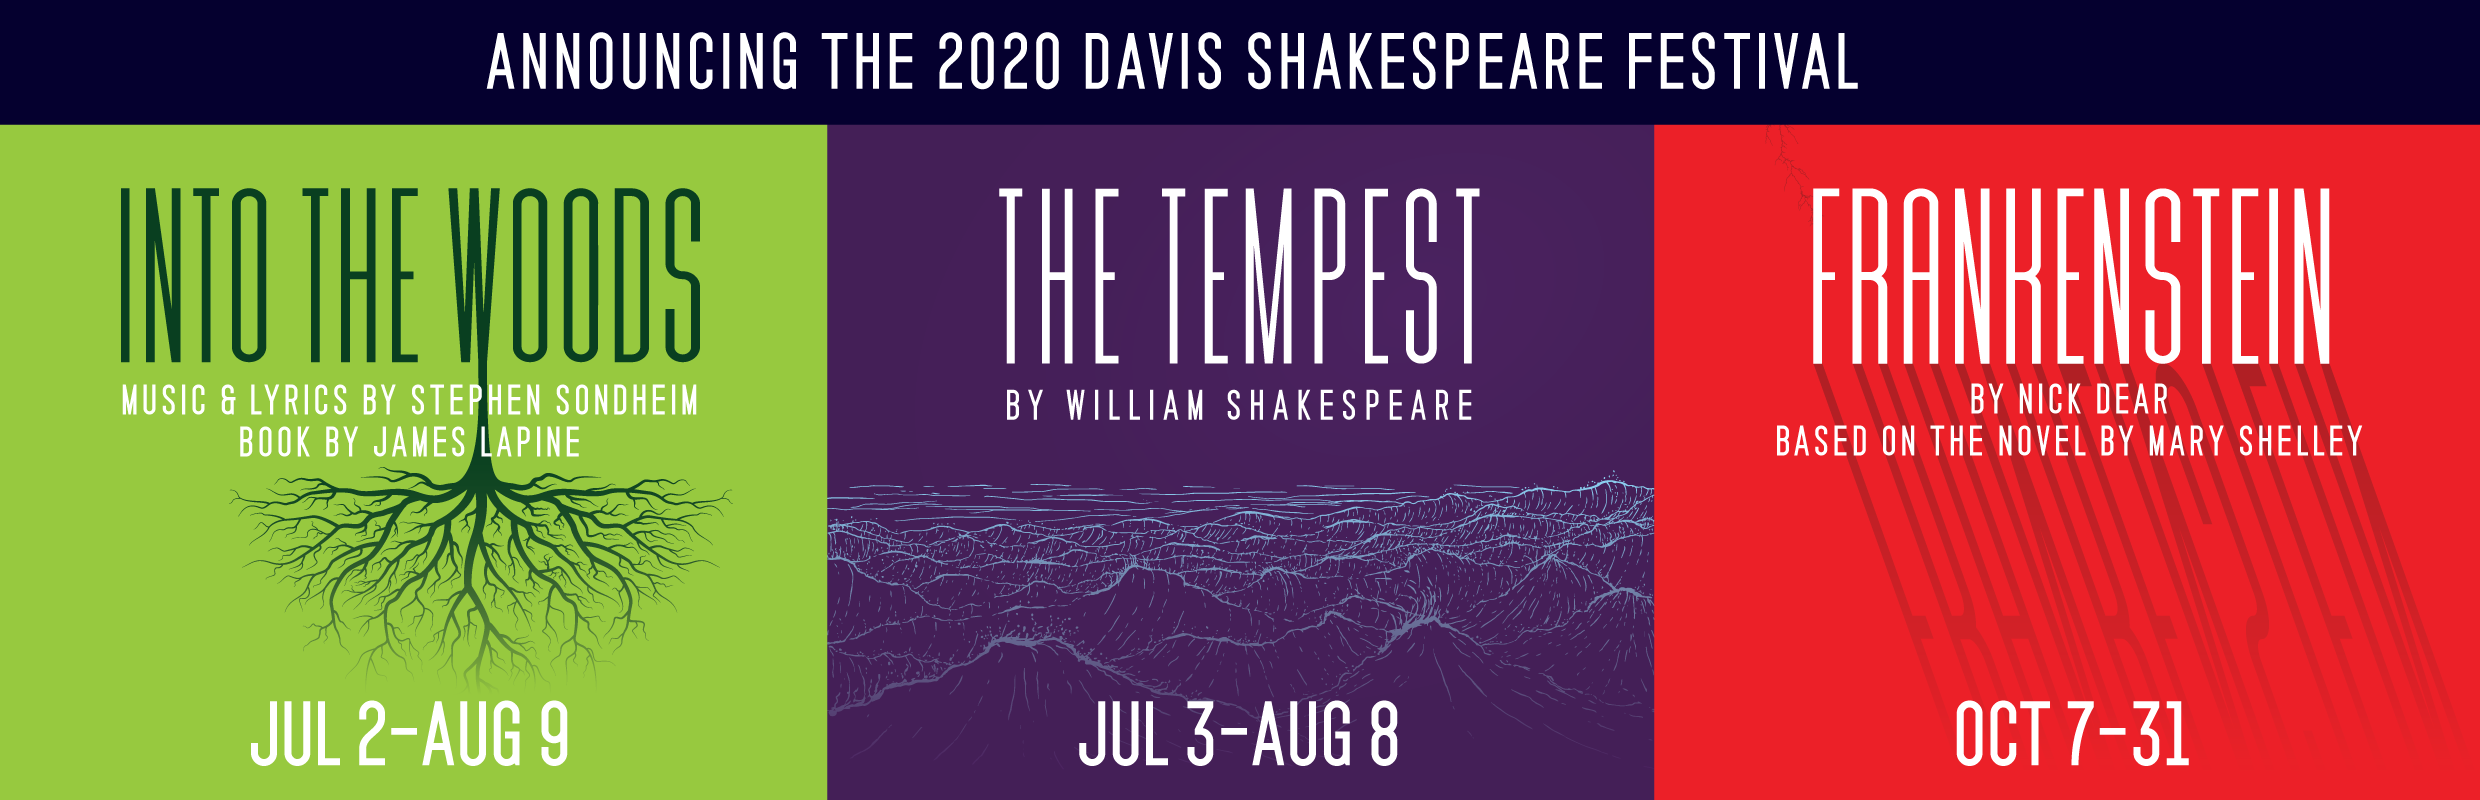 Davis Shakespeare Festival 2020